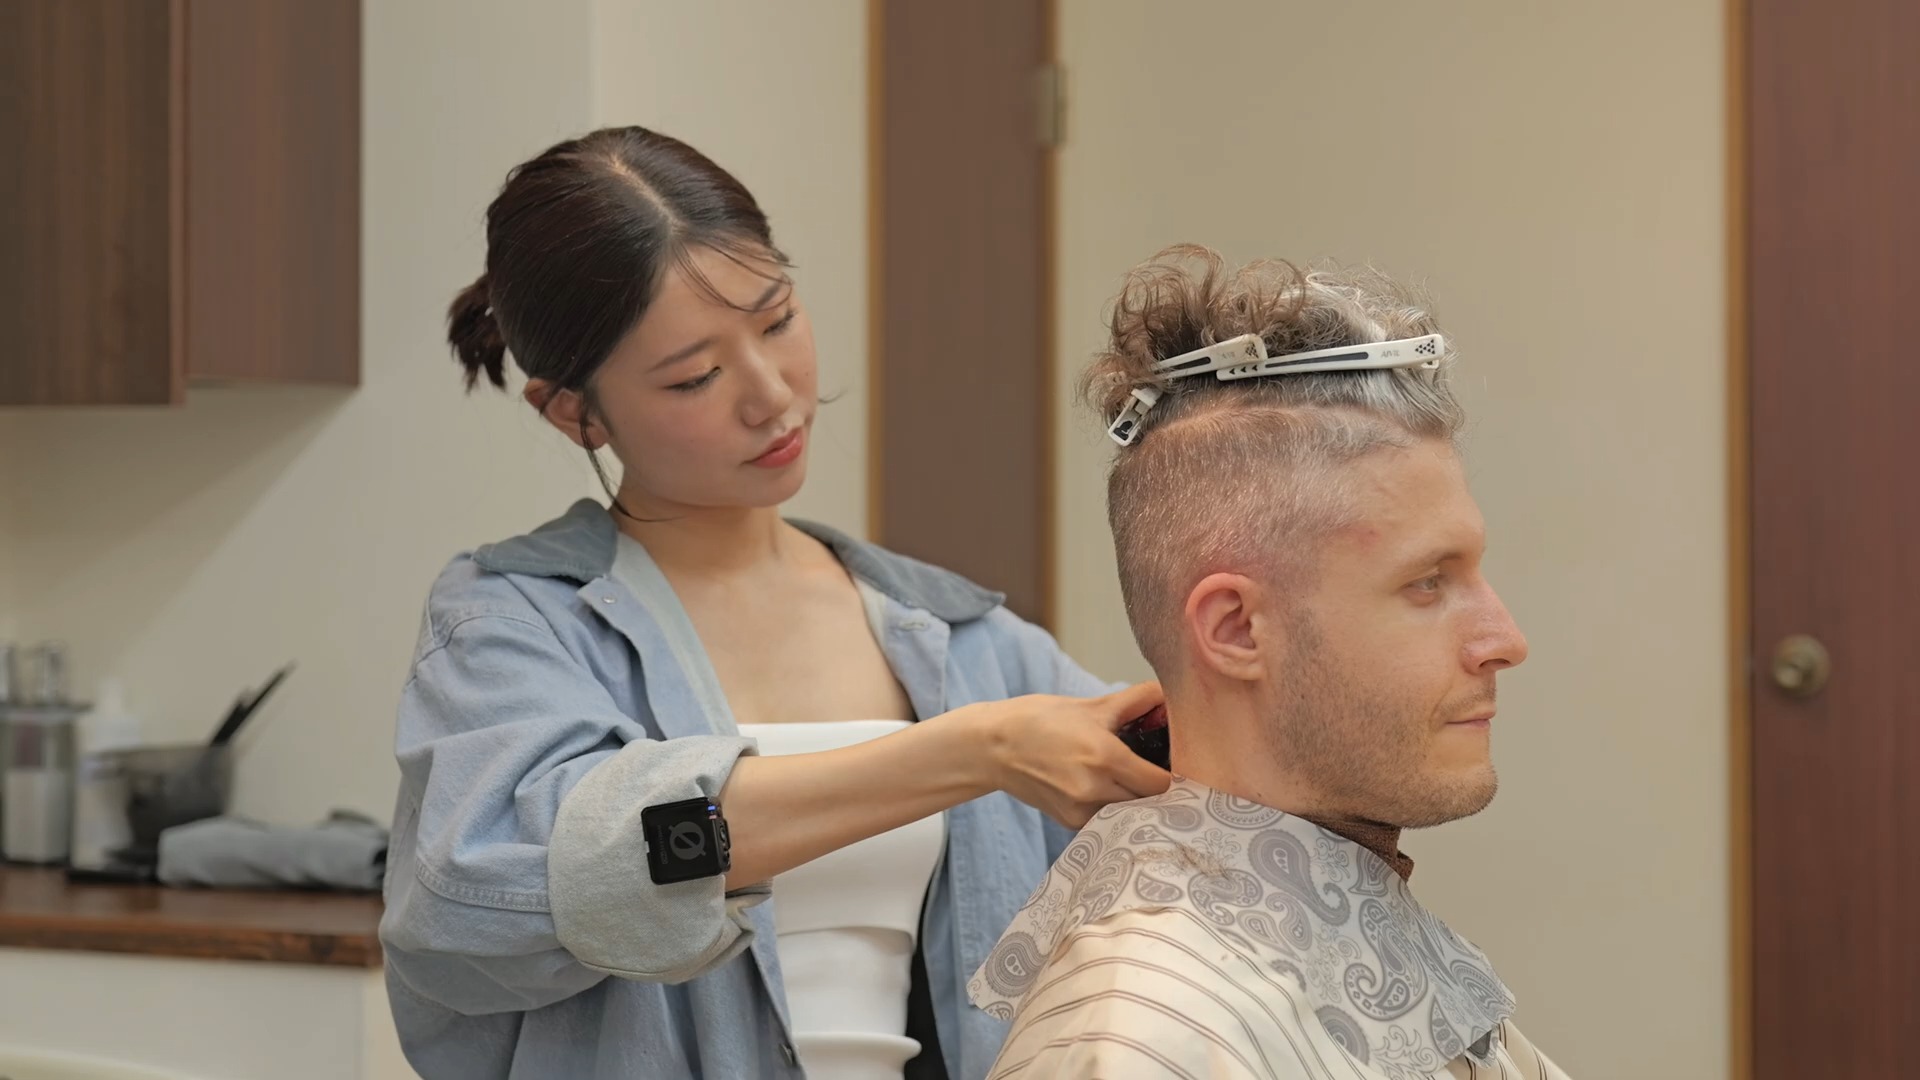 asmr 日本甜美女理发师的发型设计,剃须和放松服务